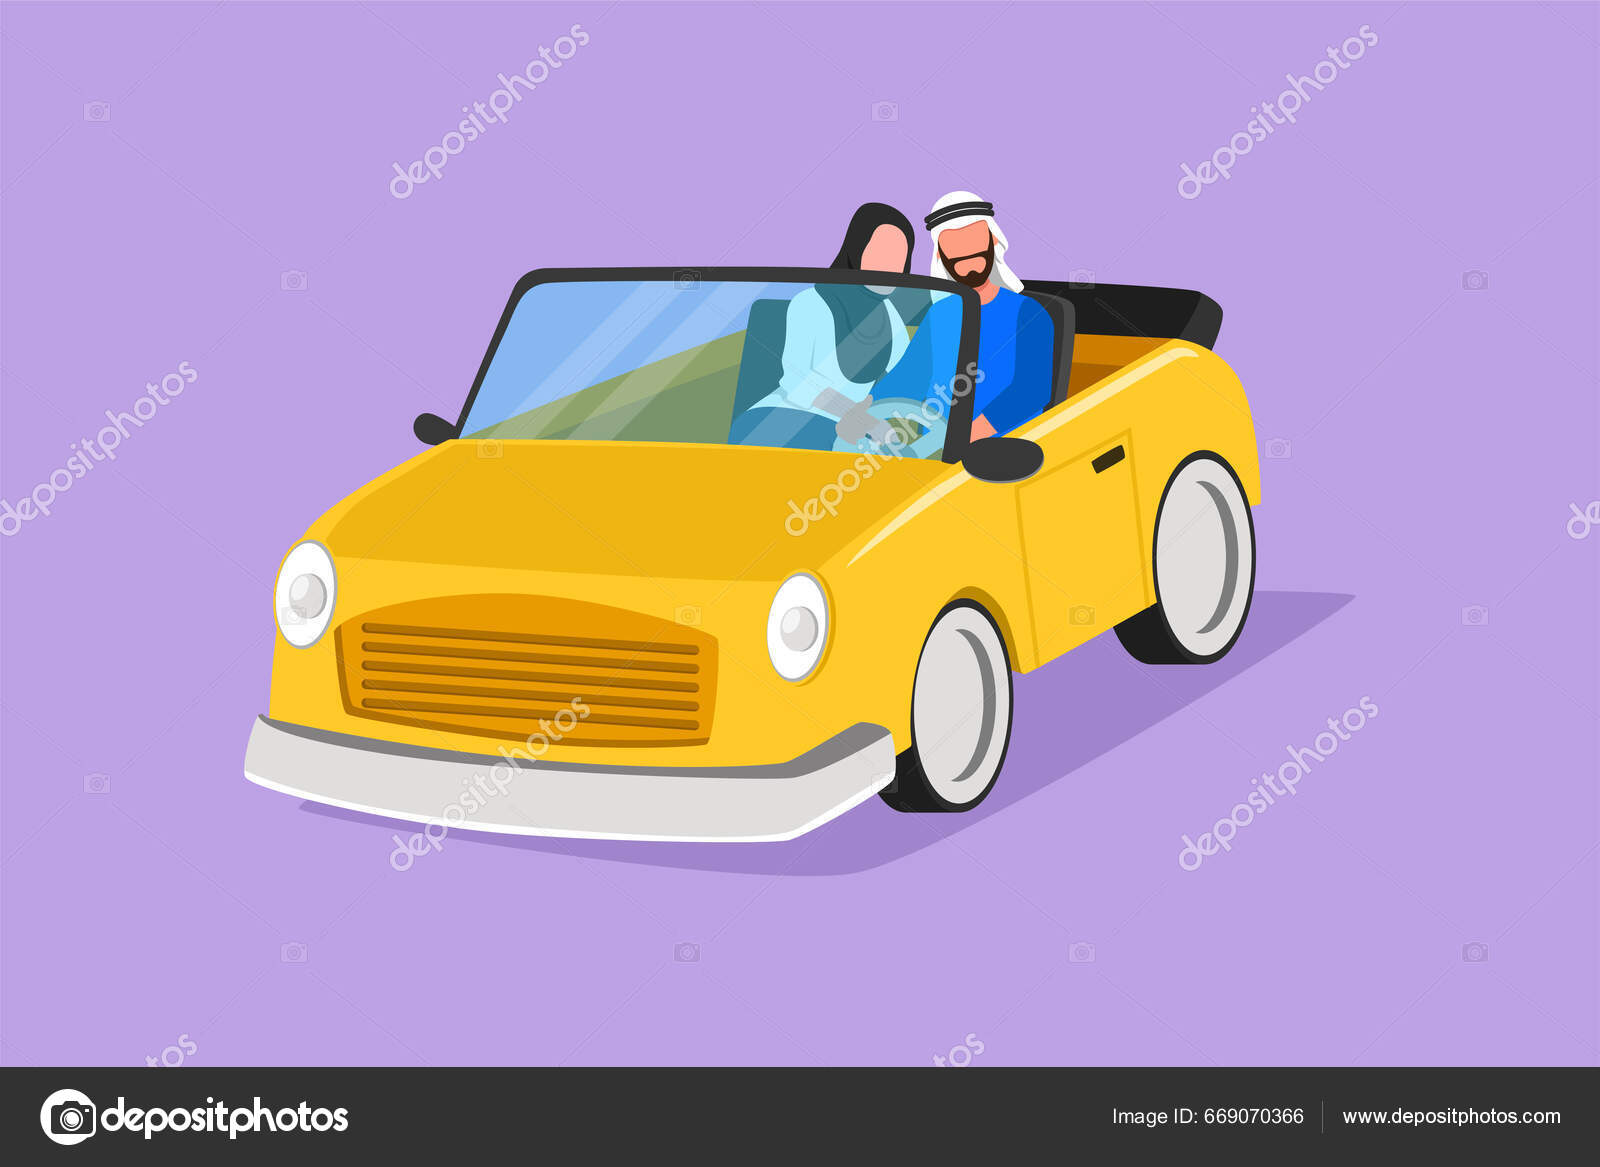 eine Illustration des glücklichen niedlichen gelben Autos